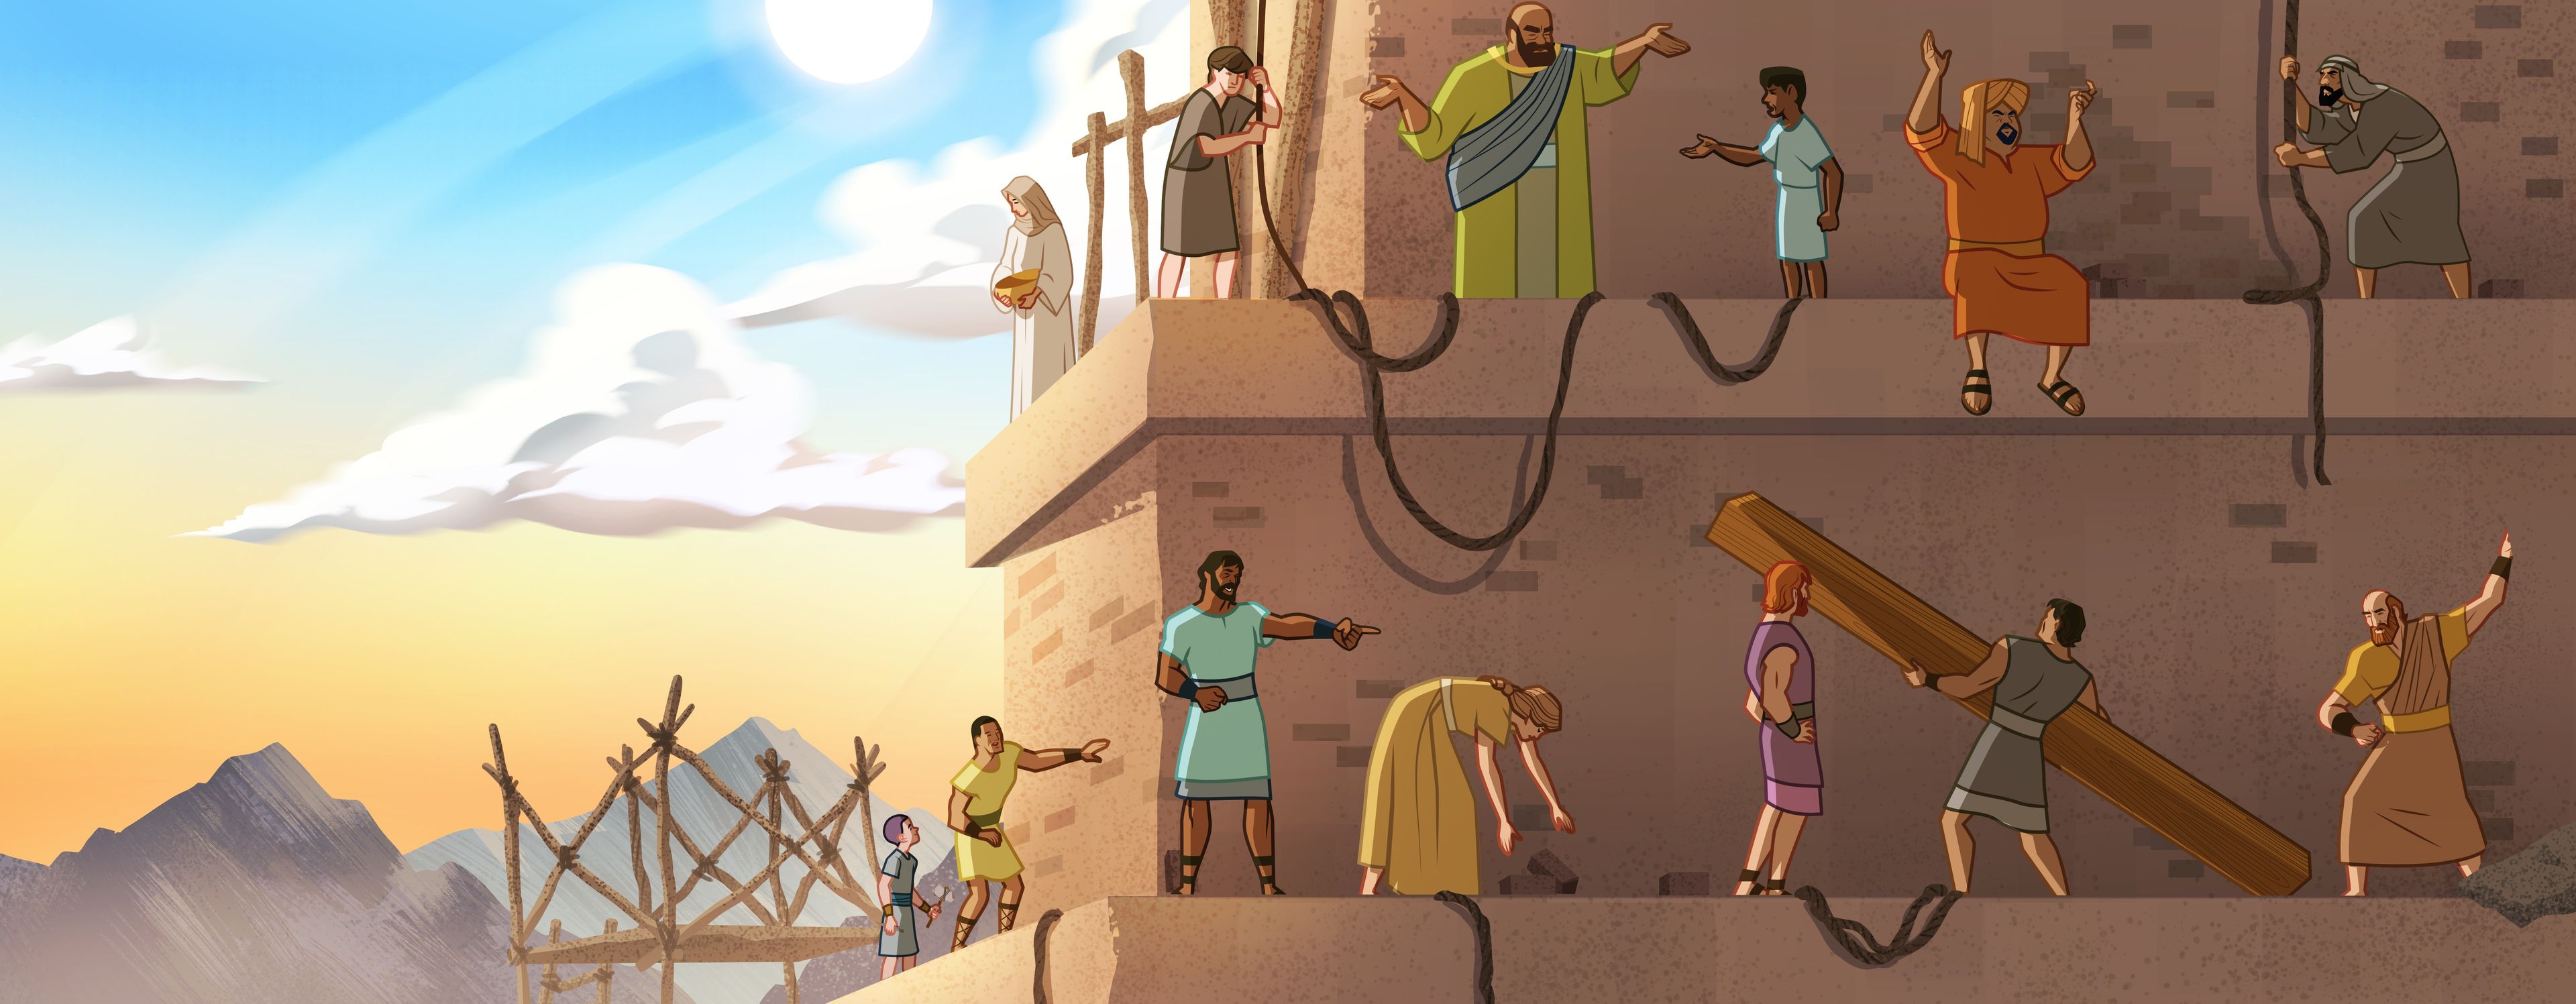 Illustration von Menschen, die einen Turm bauen 
Genesis 11:6-8; Ether 1:33